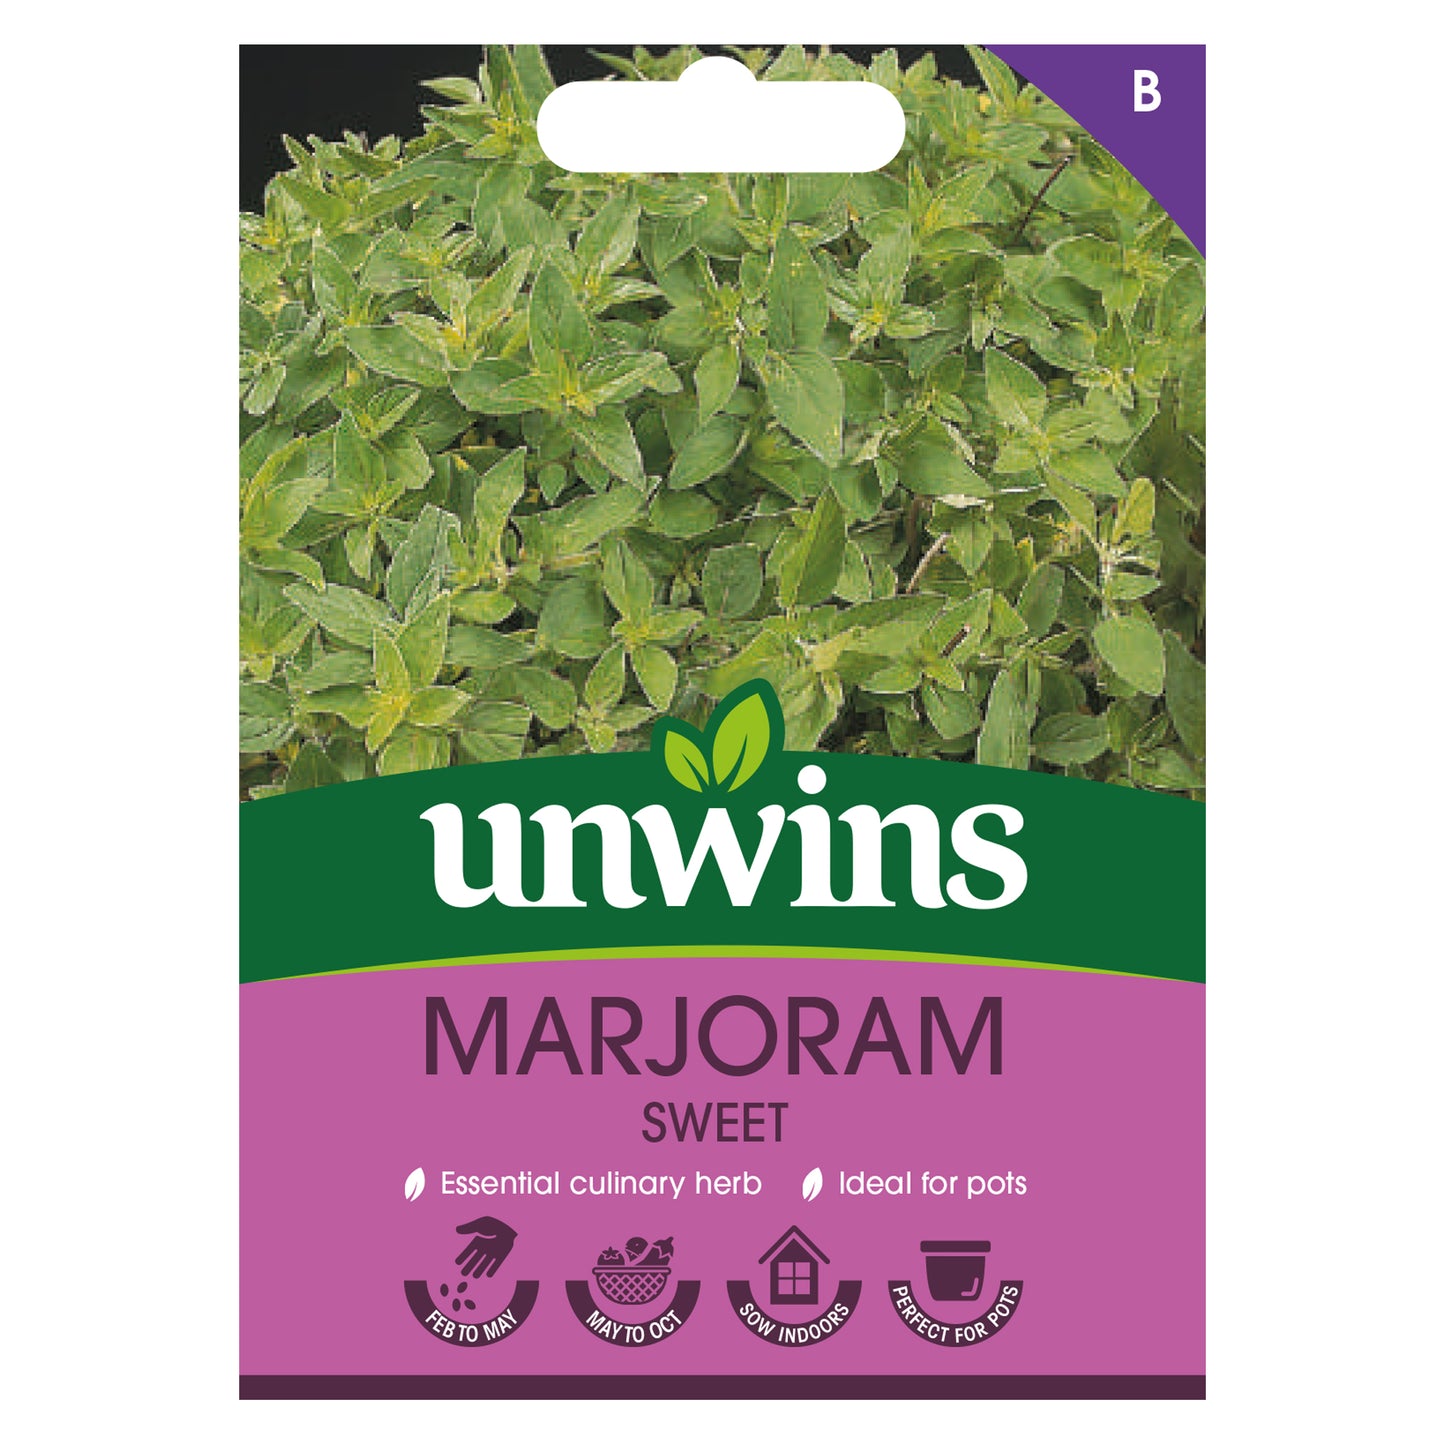 Unwins Marjoram Sweet Seeds front